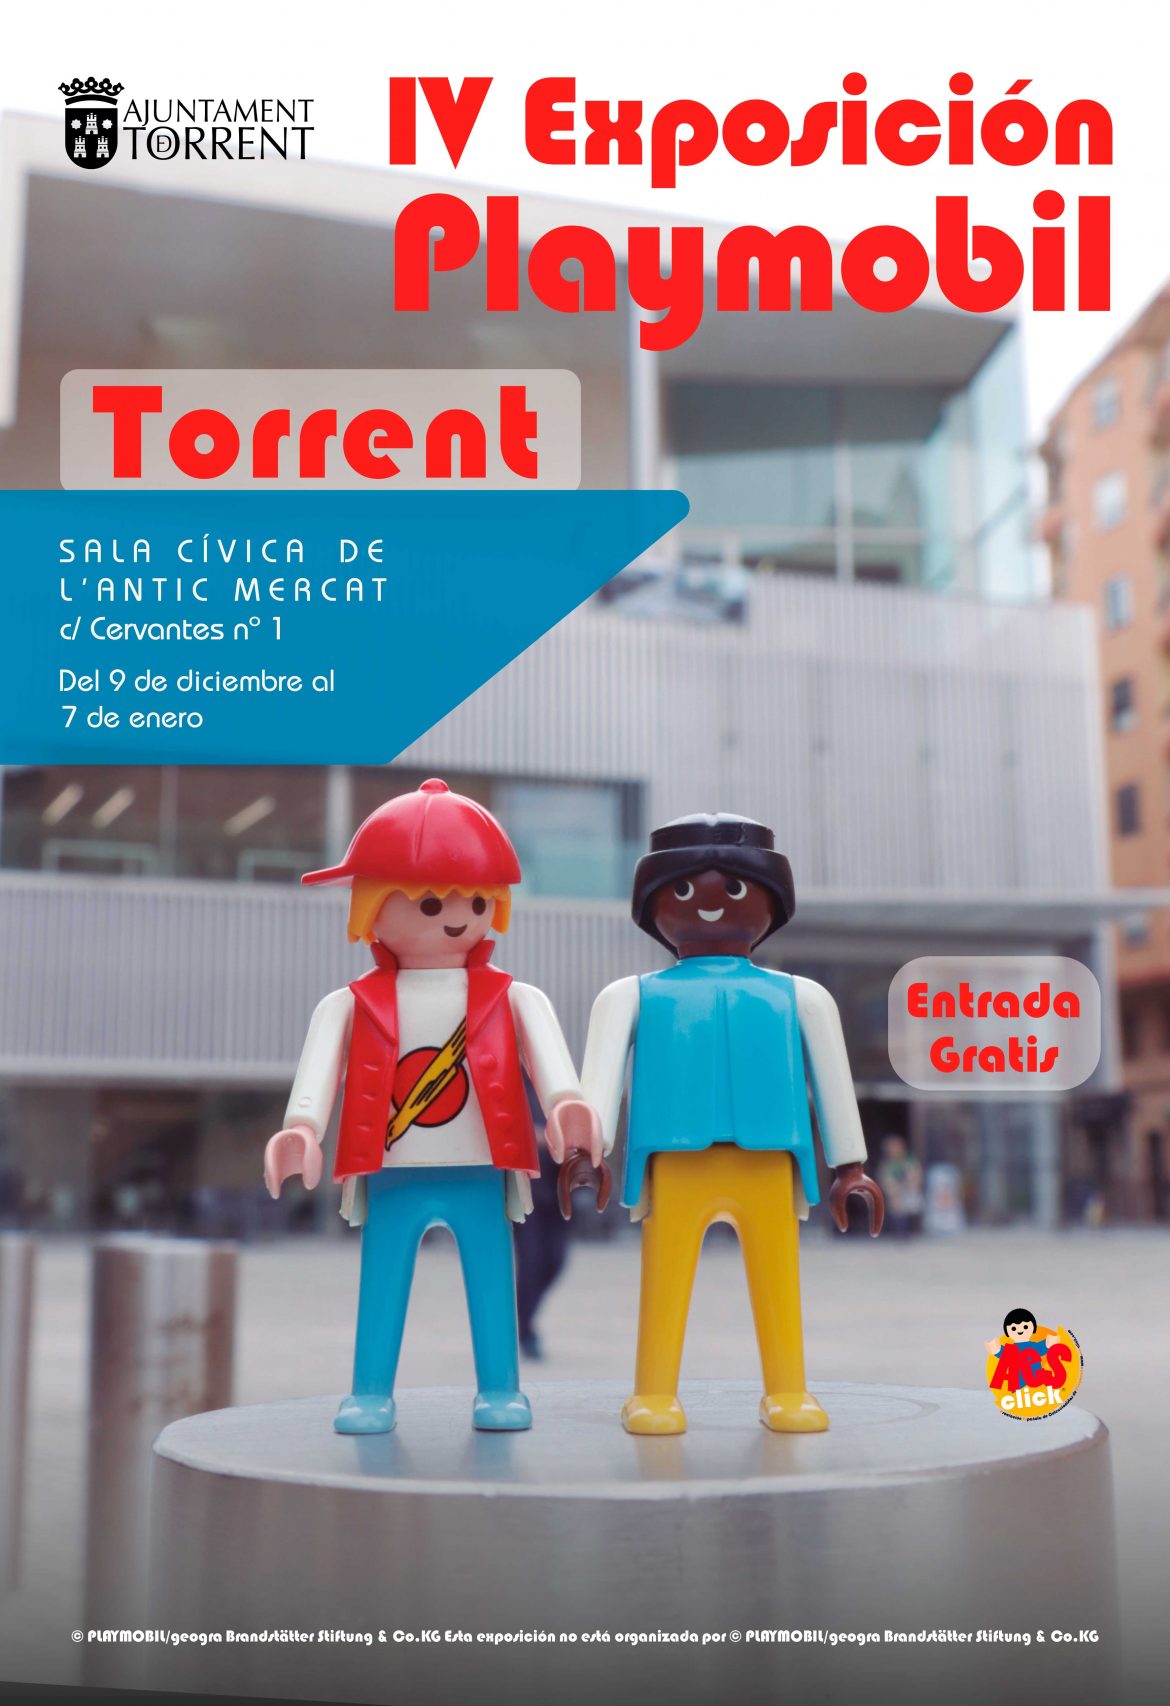 La exposición de Playmobil más grande de la Comunitat Valenciana vuelve a Torrent